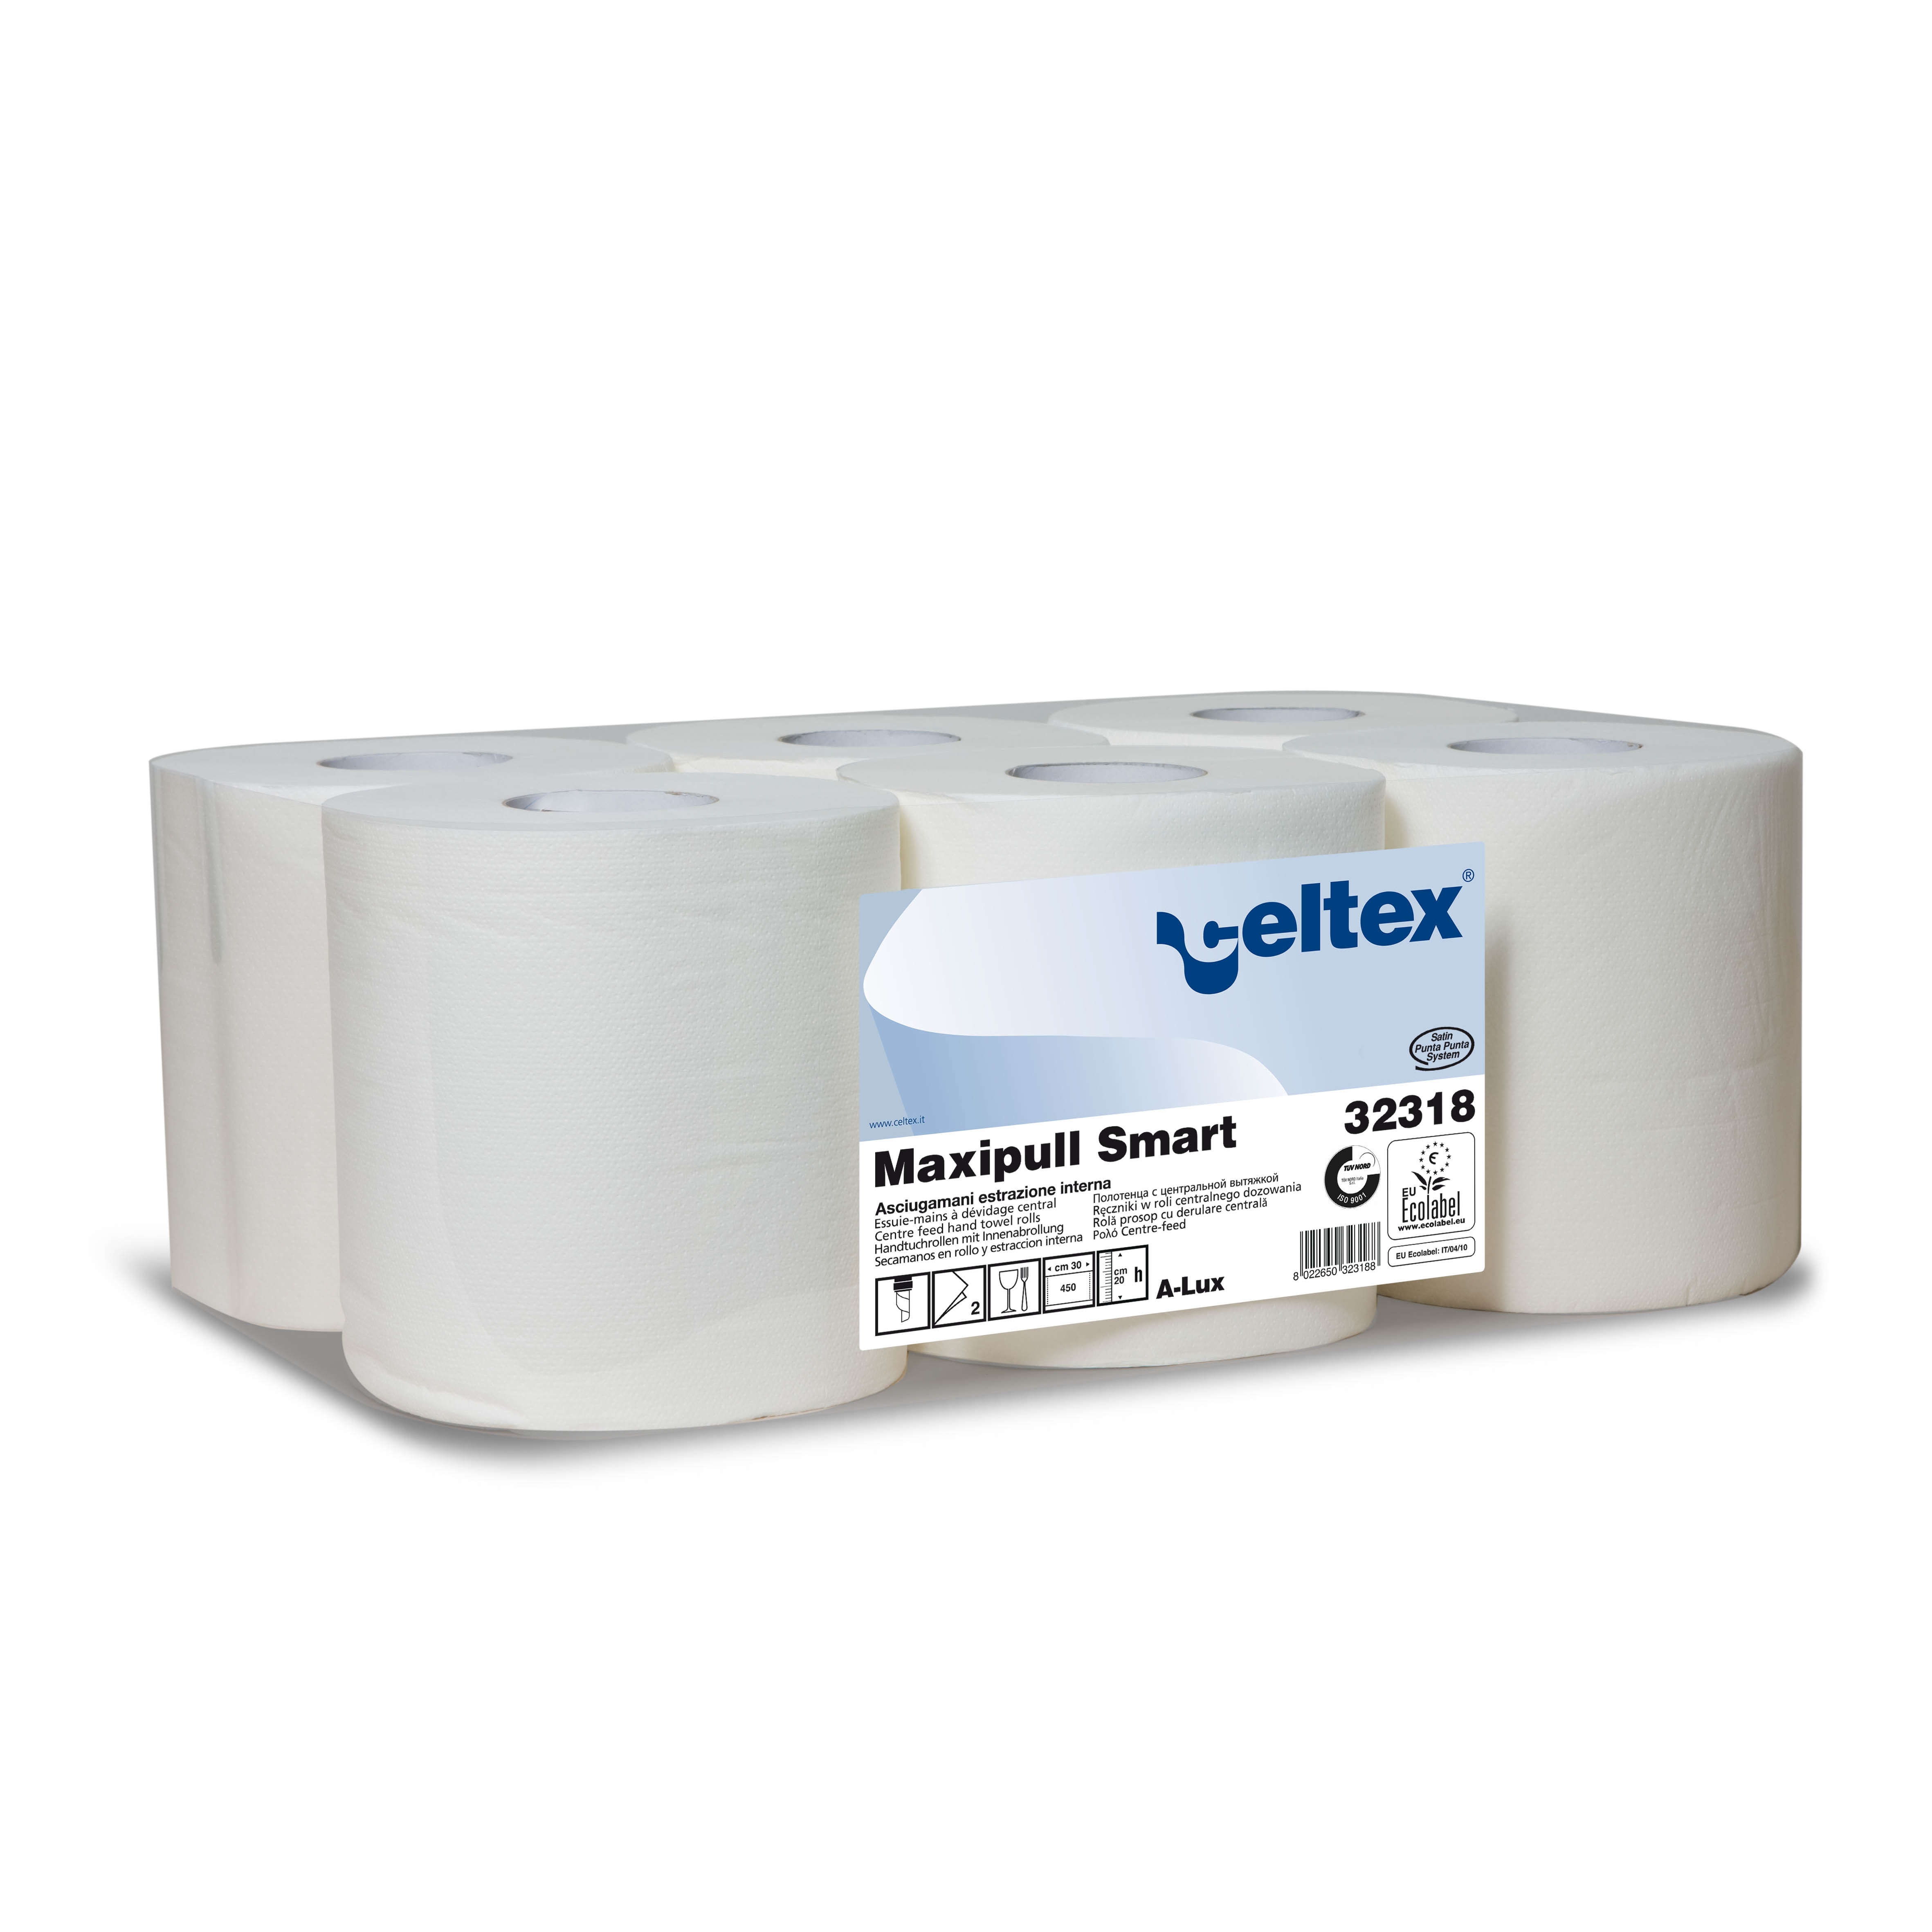 Ručníky papírové Maxi role CELTEX Smart bílé 2 vrstvy (32318)